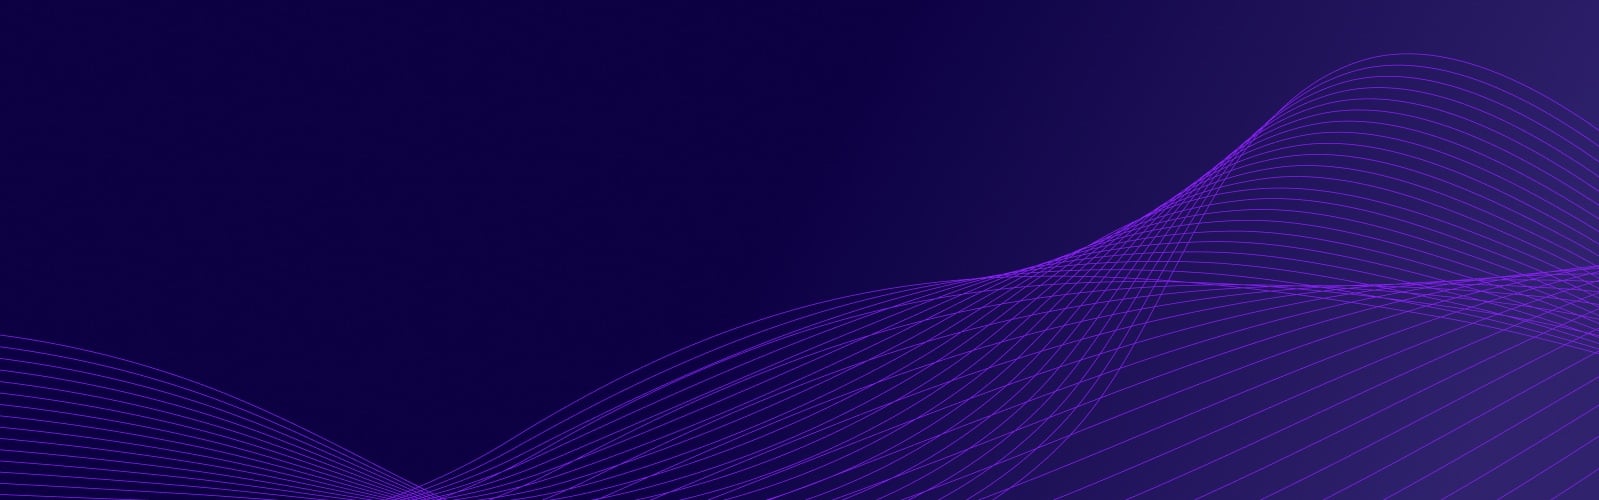 bg-purple